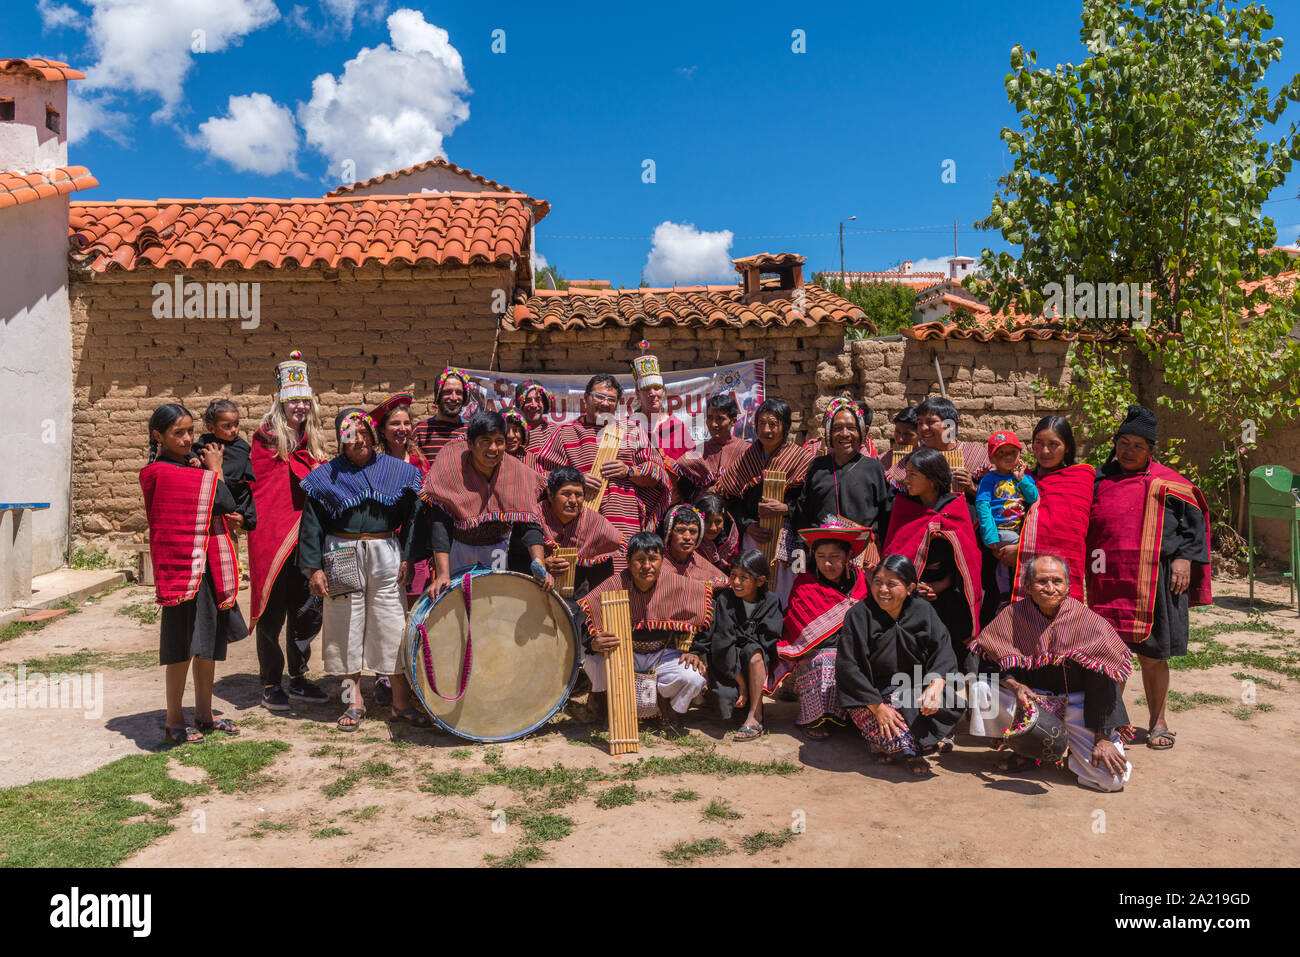 Ein touristisches Ereignis in der indigenen Dorf Puka Puka in der Nähe von Tarabuco, Konferenz der indigenen Menschen Quechuan, Sucre, Bolivien, Lateinamerika Stockfoto